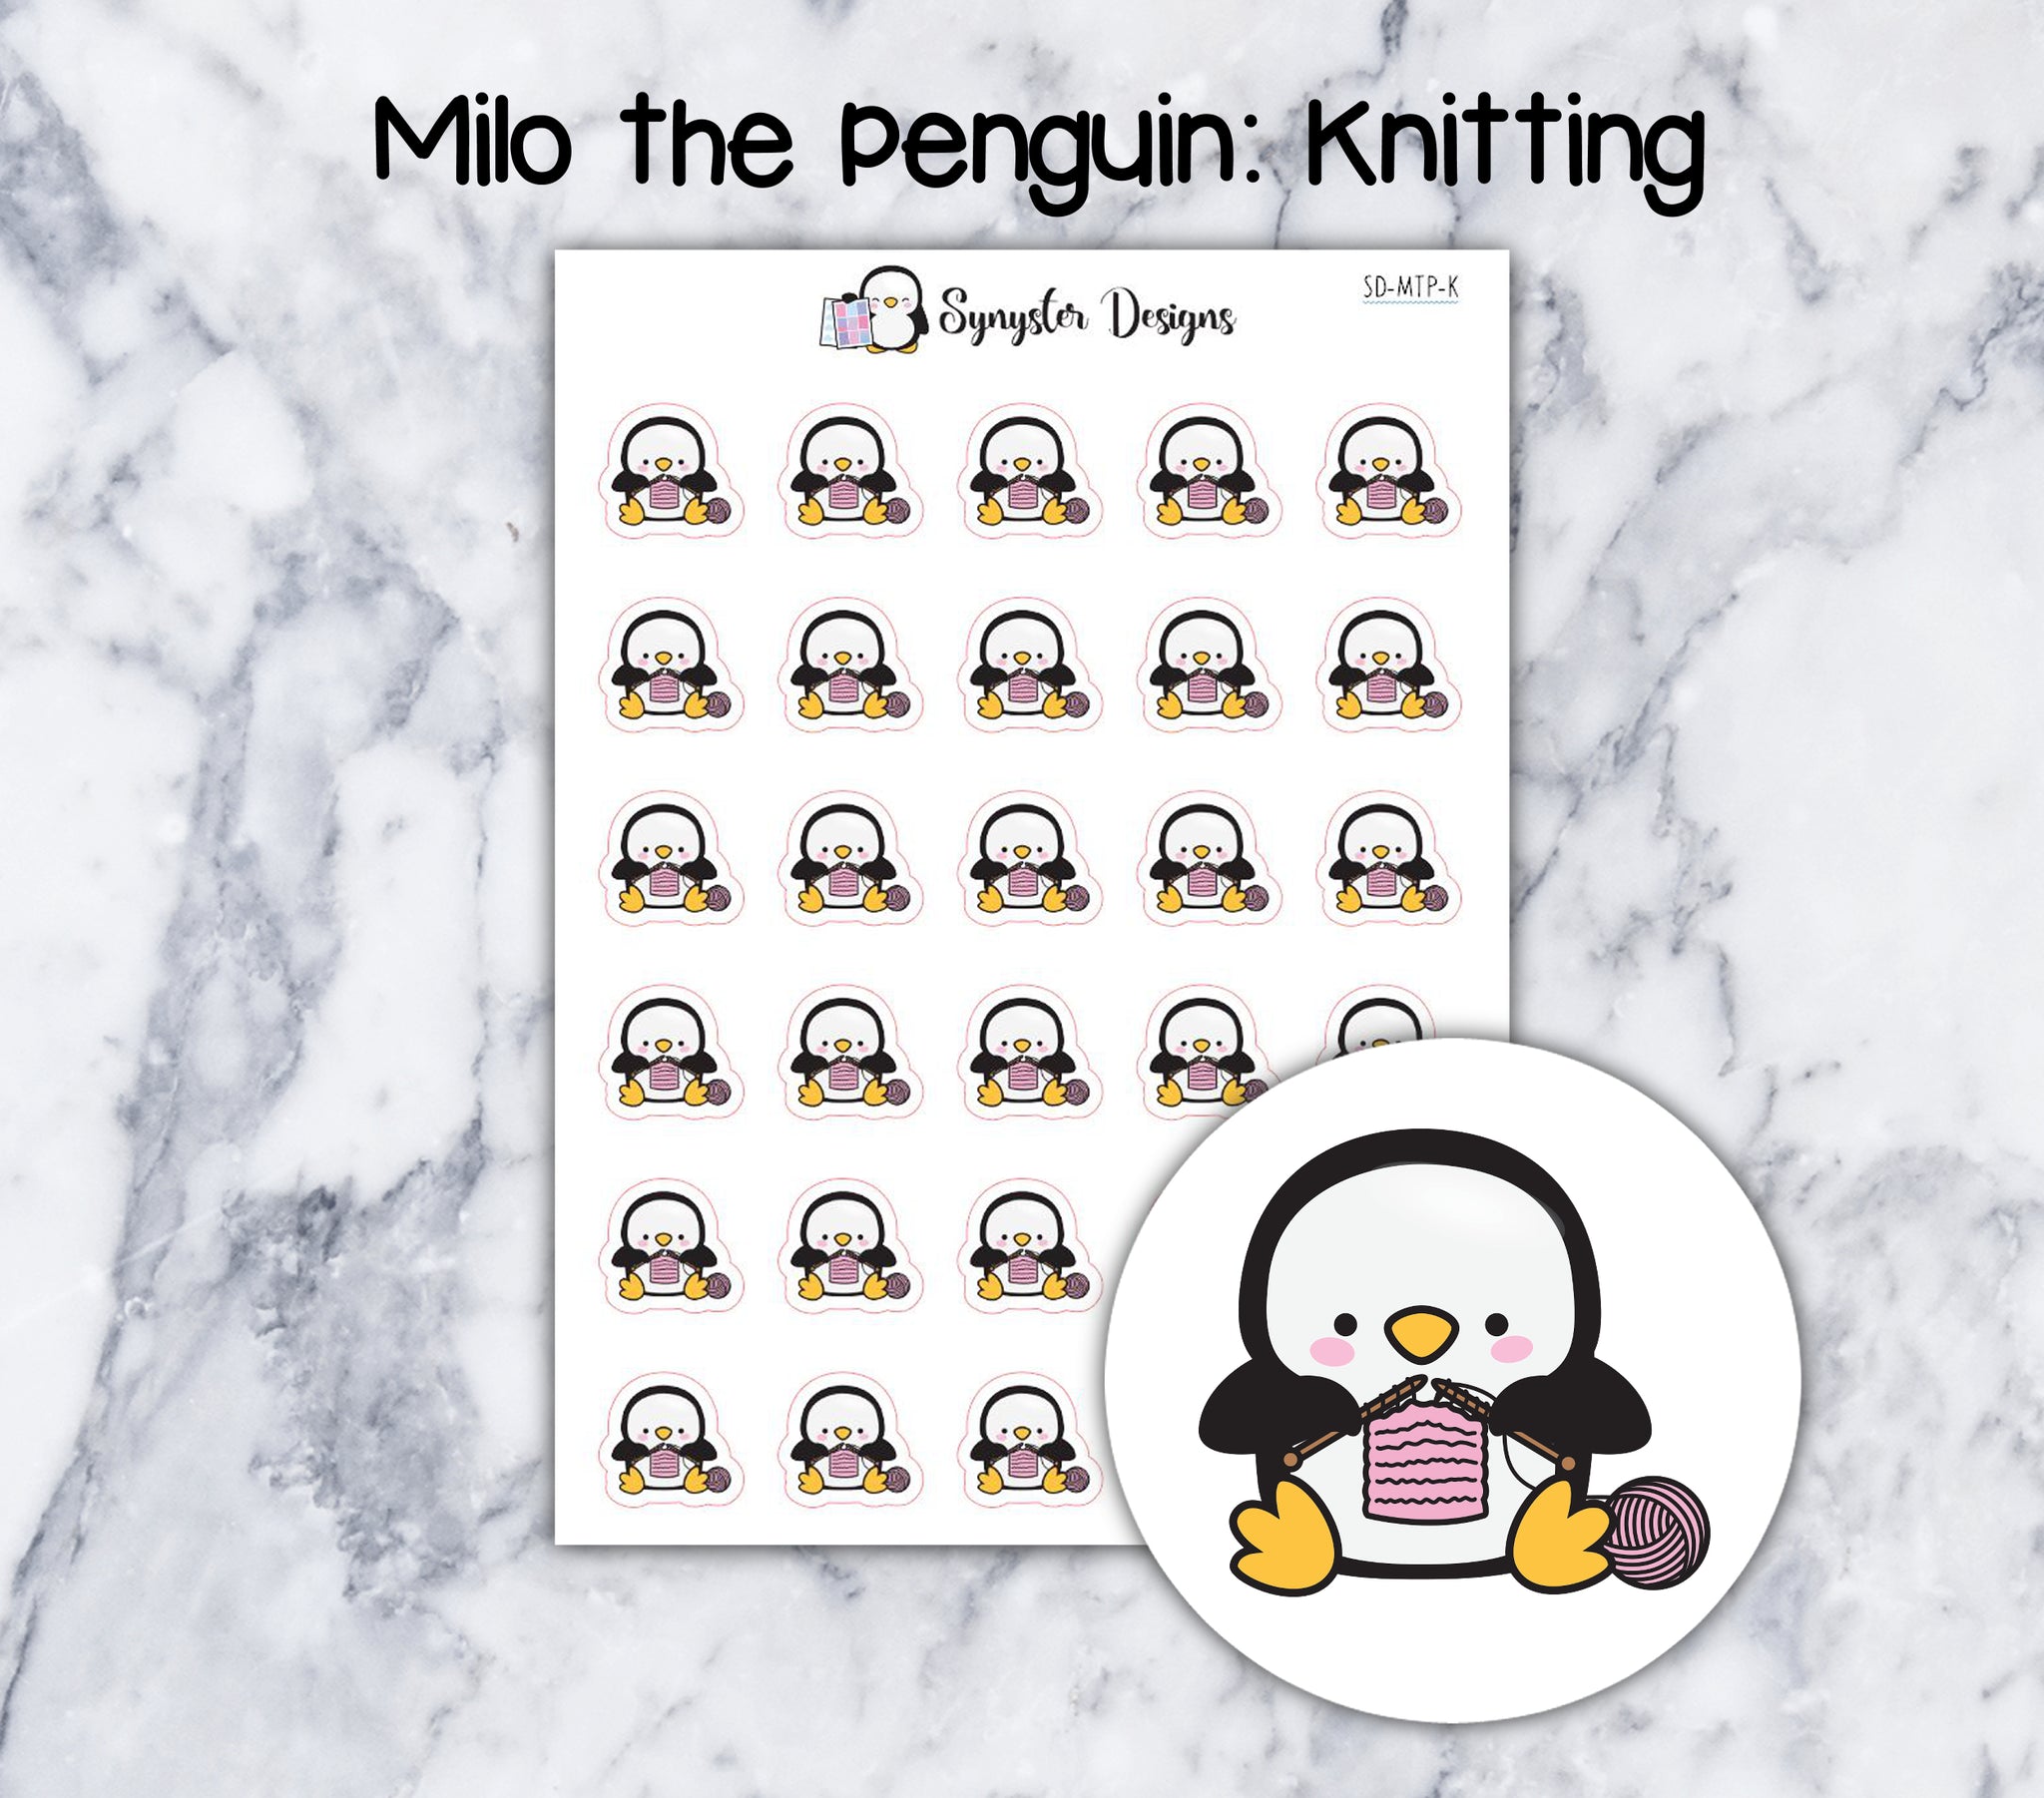 Knitting Milo the Penguin